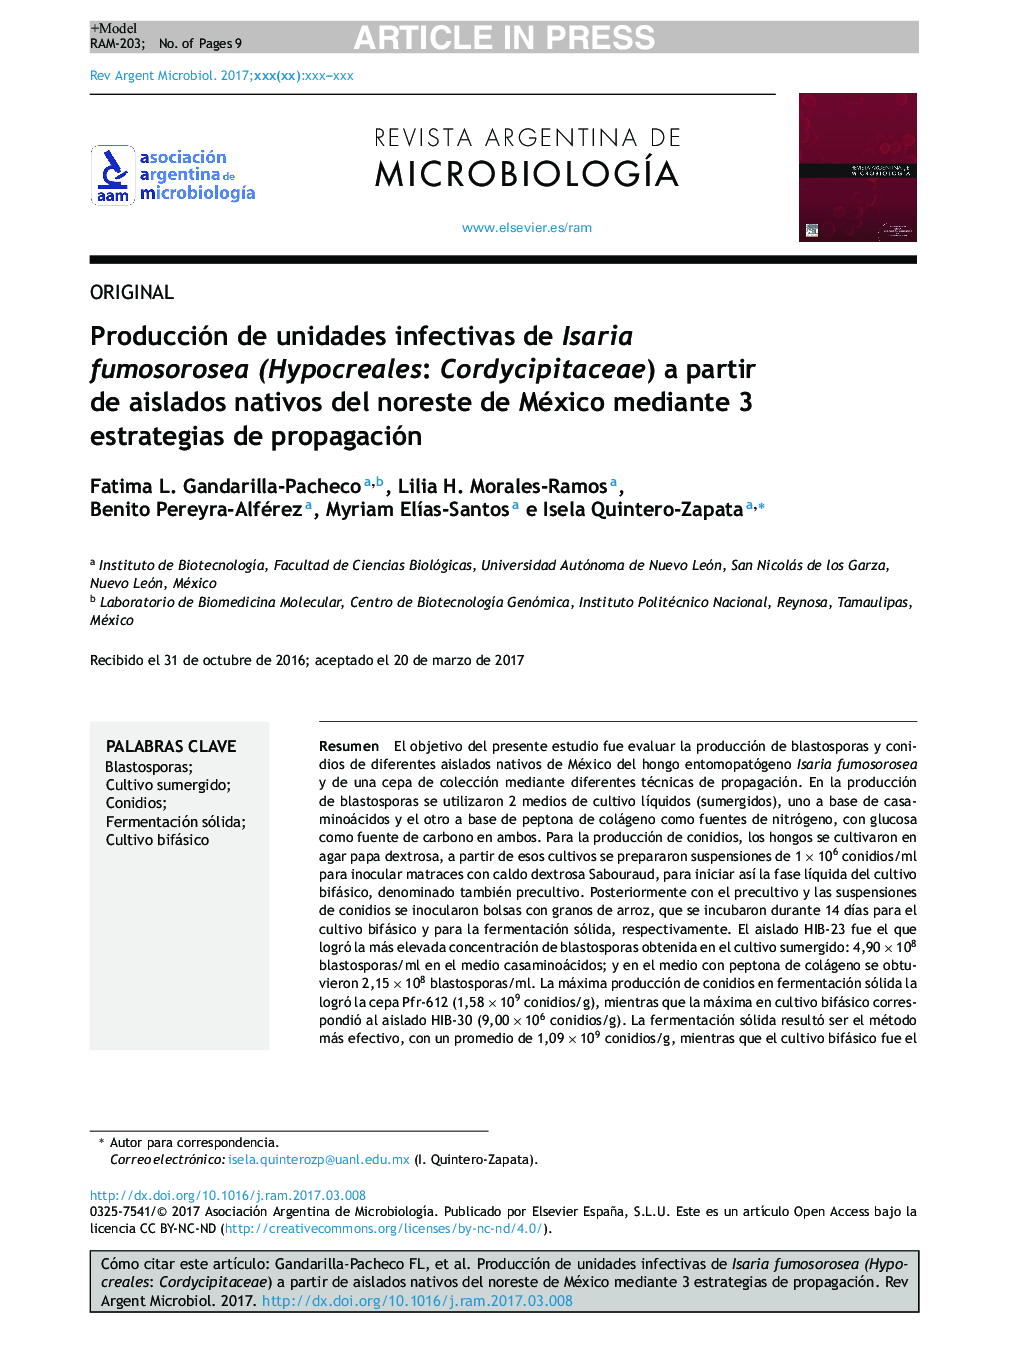 Producción de unidades infectivas de Isaria fumosorosea (Hypocreales: Cordycipitaceae) a partir de aislados nativos del noreste de México mediante 3 estrategias de propagación